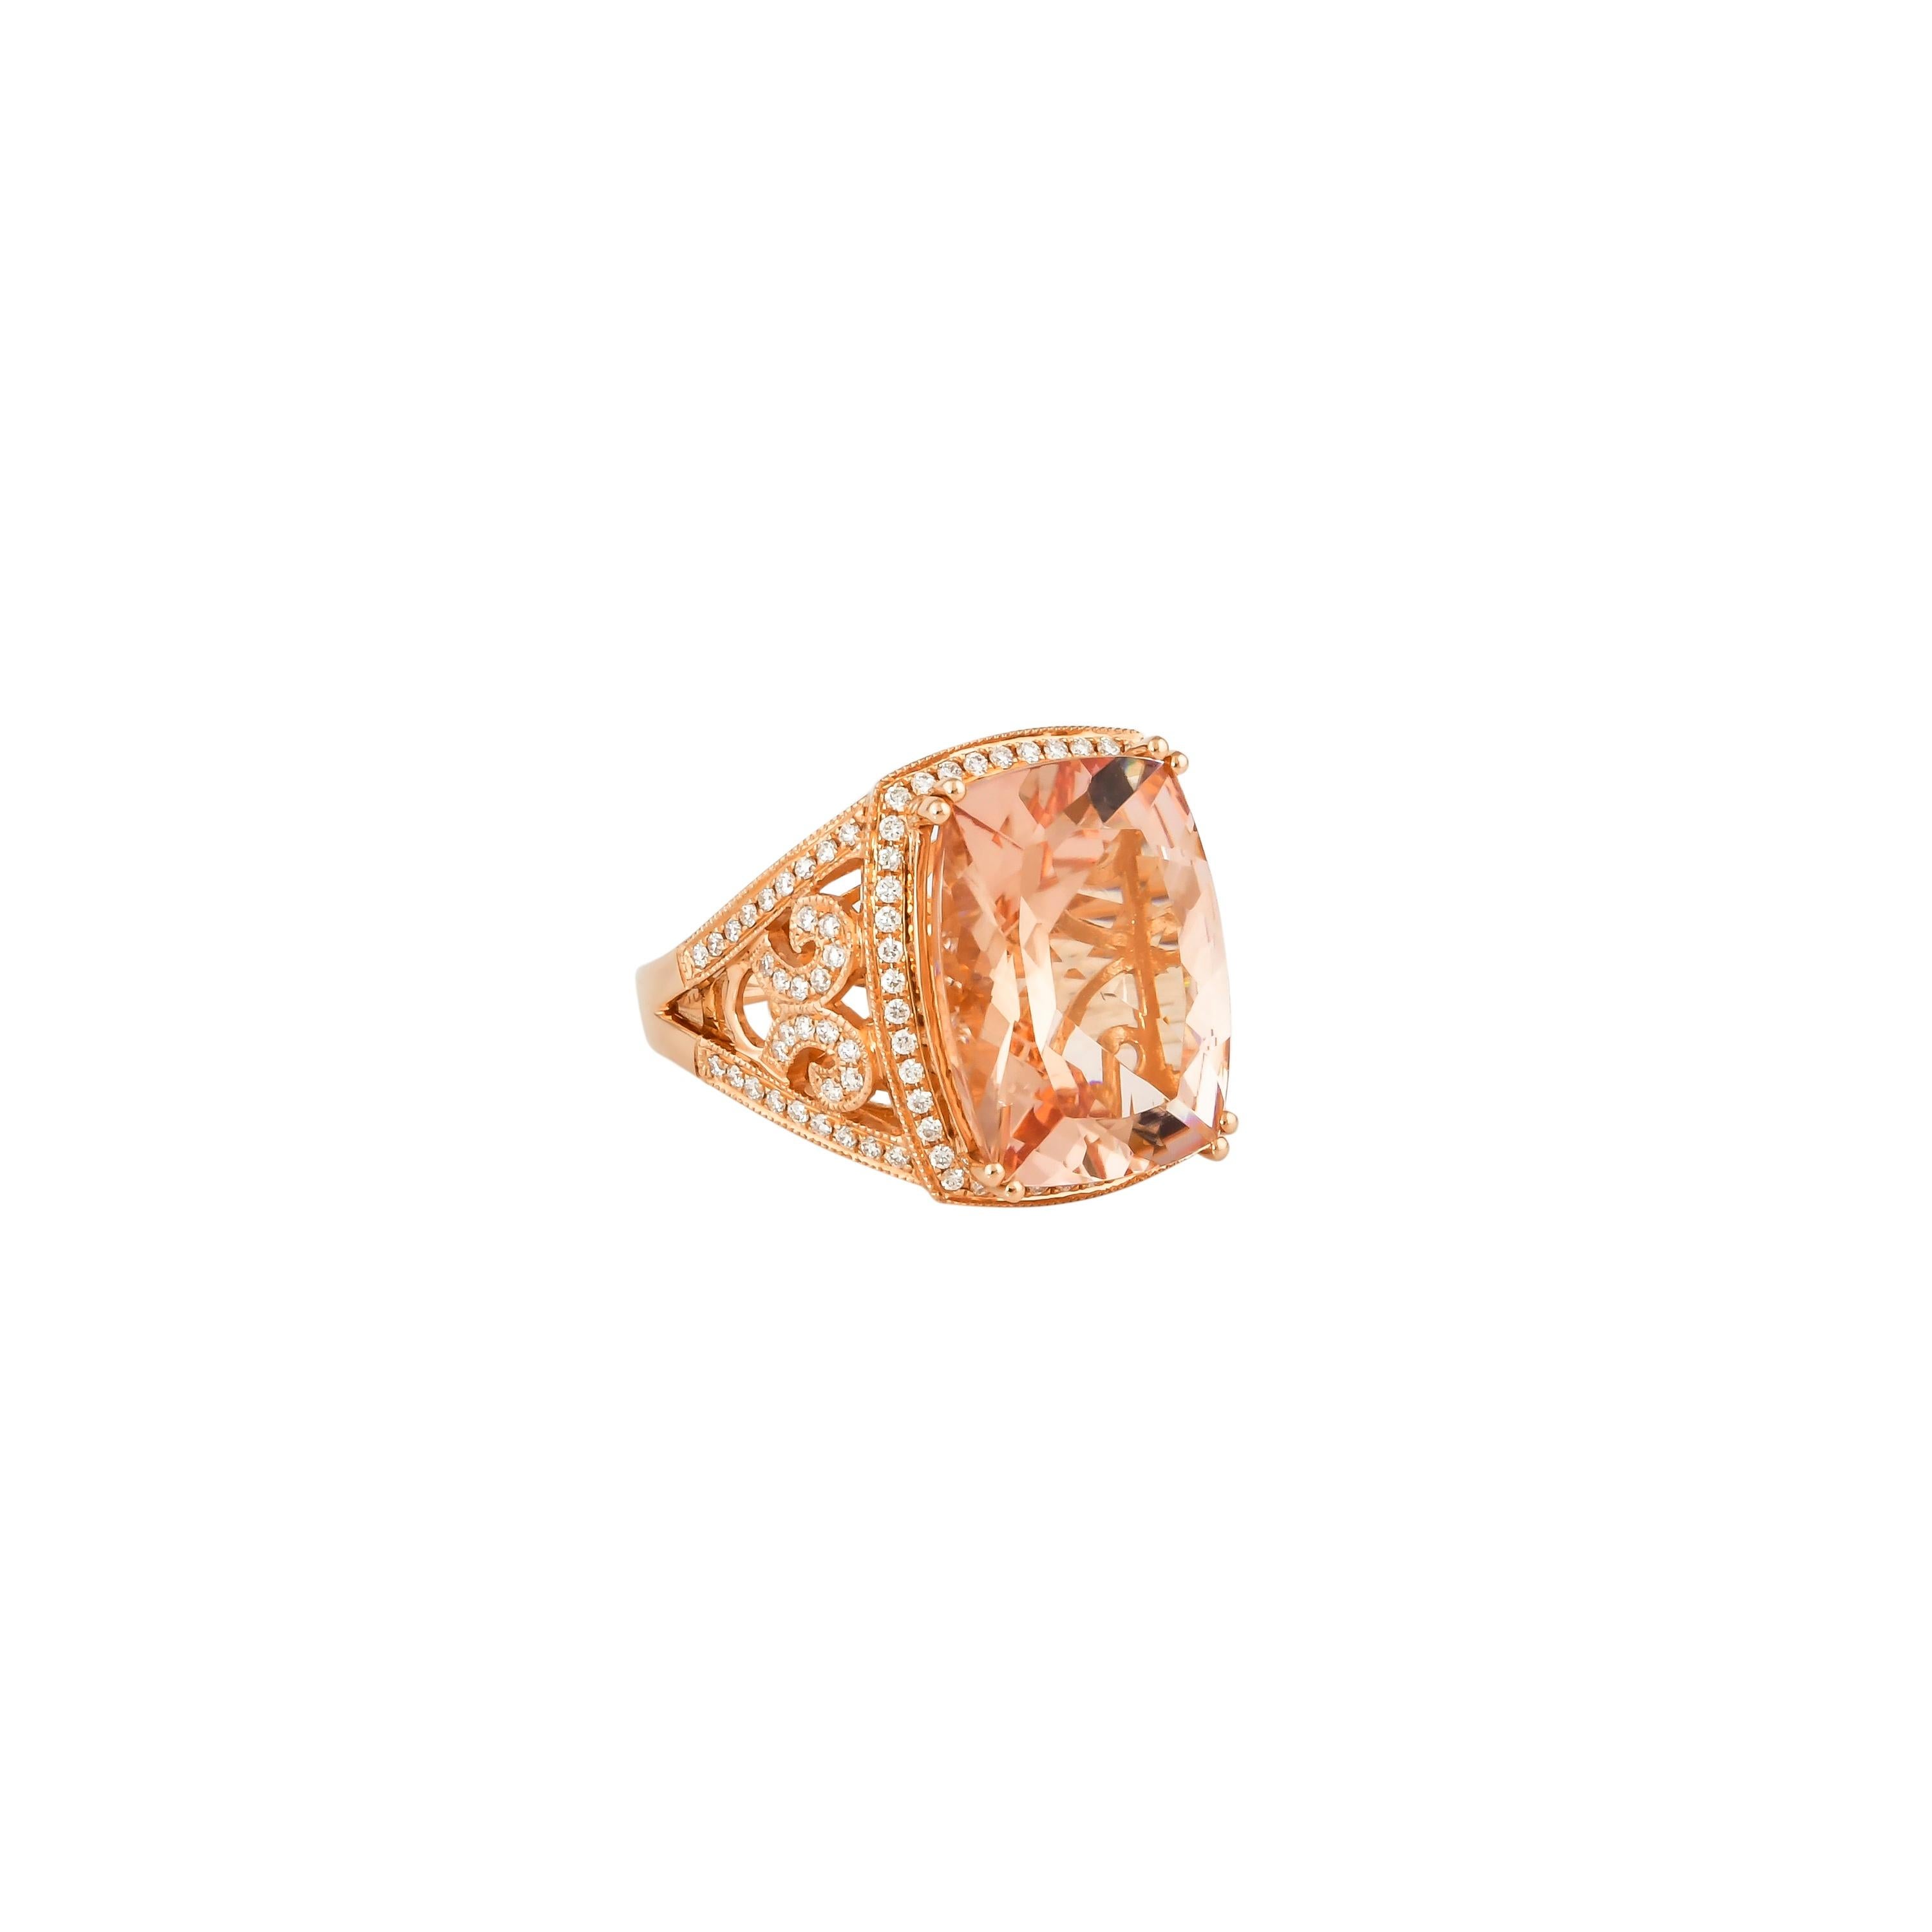 Diese Kollektion bietet eine Reihe von prächtigen Morganiten! Diese mit Diamanten besetzten Ringe sind aus Roségold gefertigt und wirken klassisch und elegant. 

Klassischer Morganit-Ring aus 18 Karat Roségold mit Diamanten. 

Morganit: 9,03 Karat